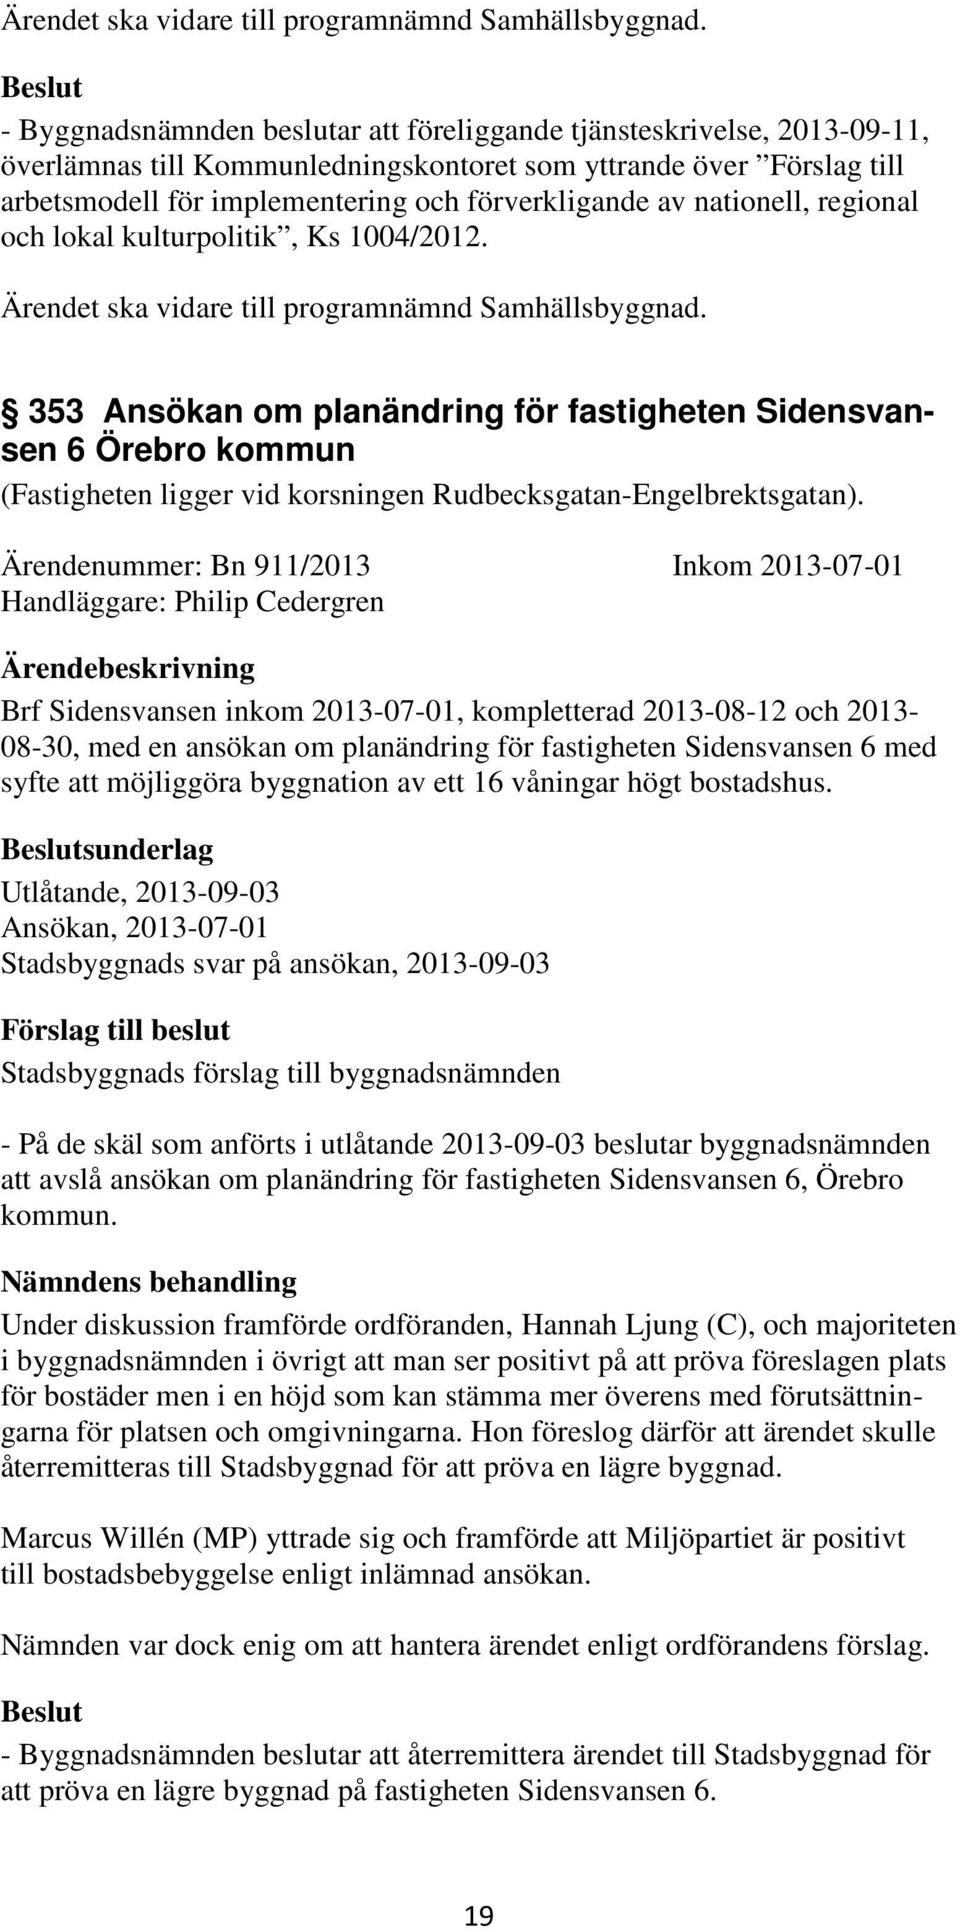 nationell, regional och lokal kulturpolitik, Ks 1004/2012.  353 Ansökan om planändring för fastigheten Sidensvansen 6 Örebro kommun (Fastigheten ligger vid korsningen Rudbecksgatan-Engelbrektsgatan).